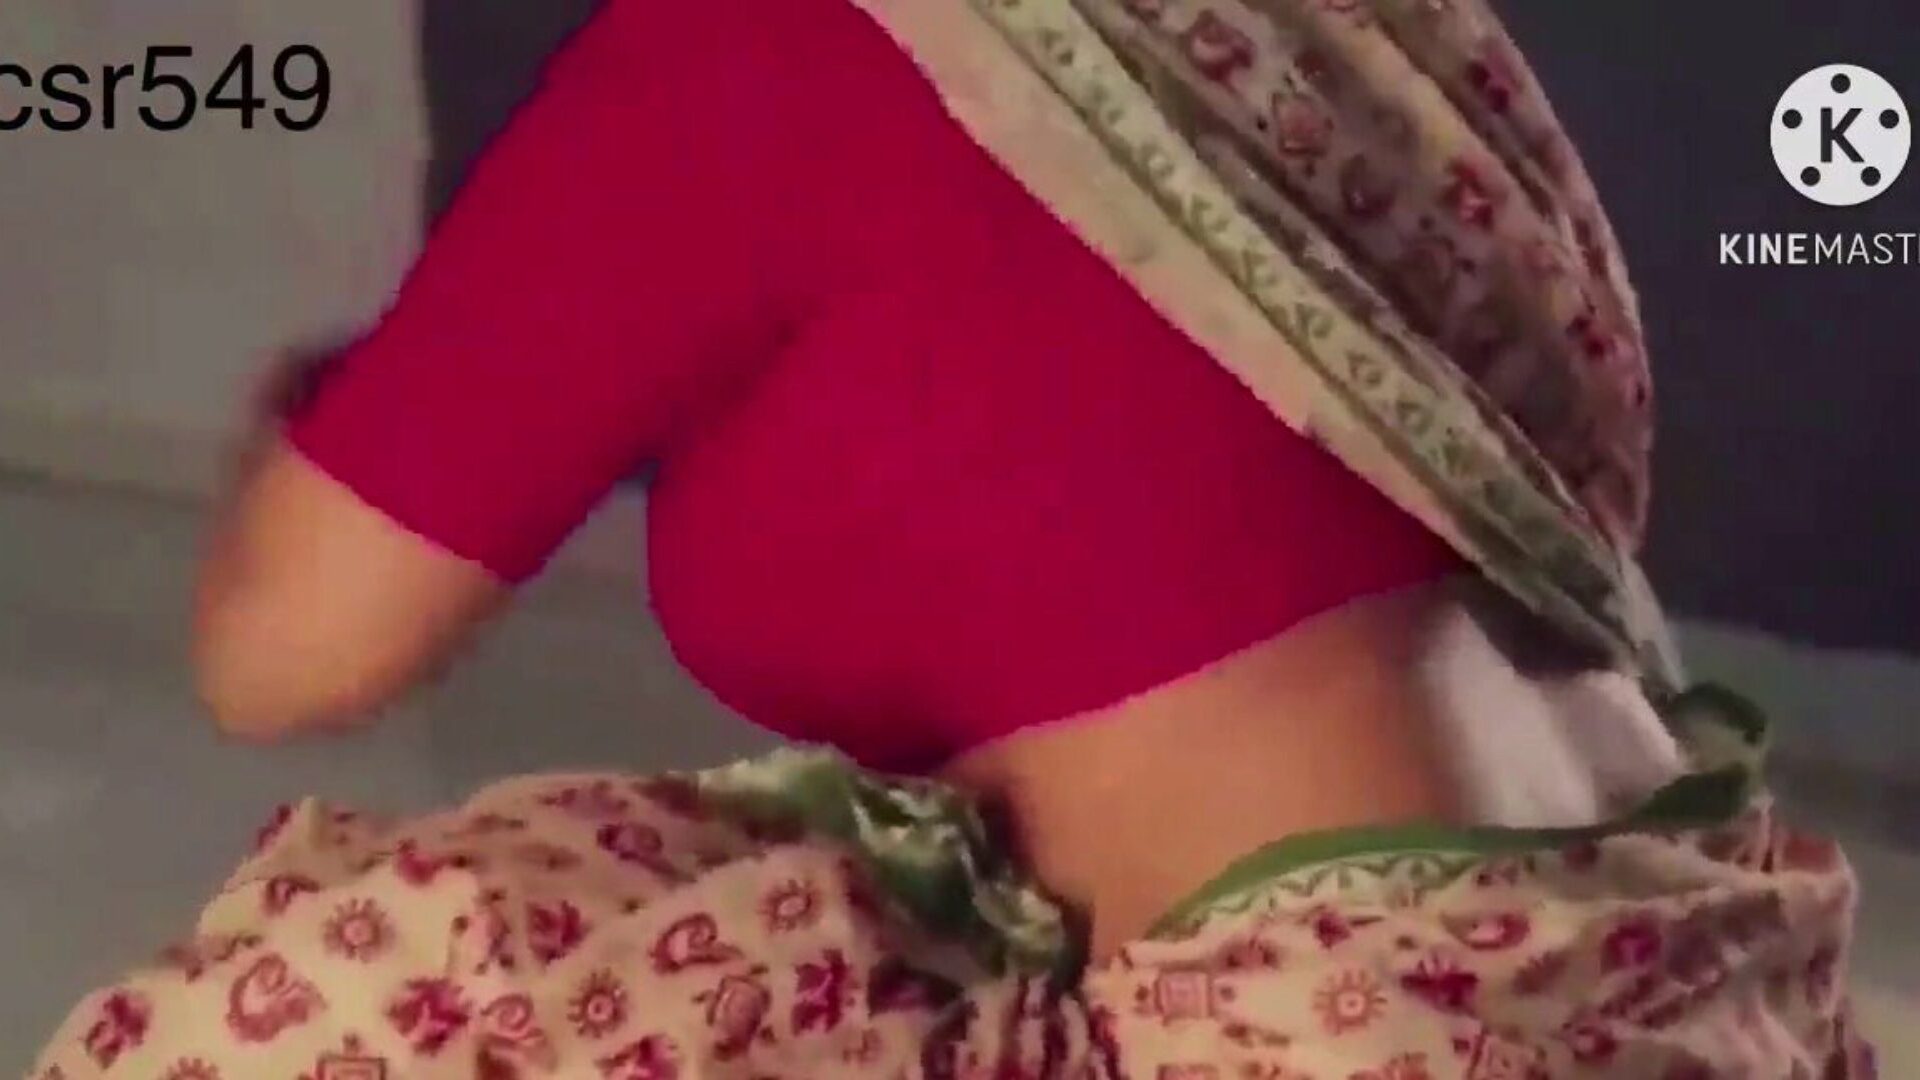 desi sexy n jugy red sari mujeres folladas por ... mira desi sexy y jugosa mujer en un sari rojo follada por sirviente movie on xhamster - the ultimate database of free-for-all asian indian hd porno tube vids